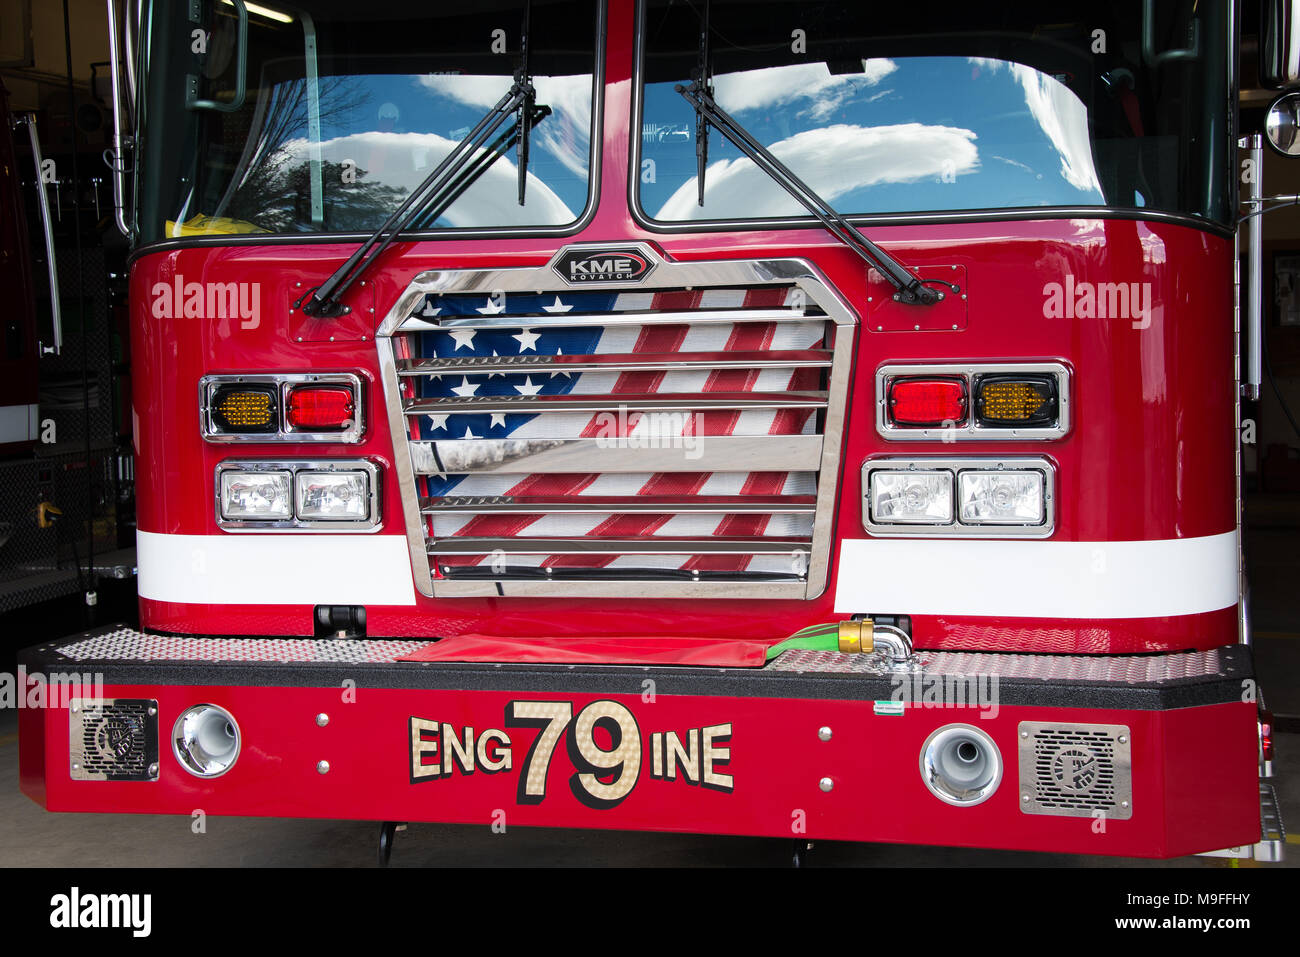 Vue de face d'un camion incendie KME garés dans le spéculateur Volunteer Fire Department fire house en spéculateur, NY USA Banque D'Images